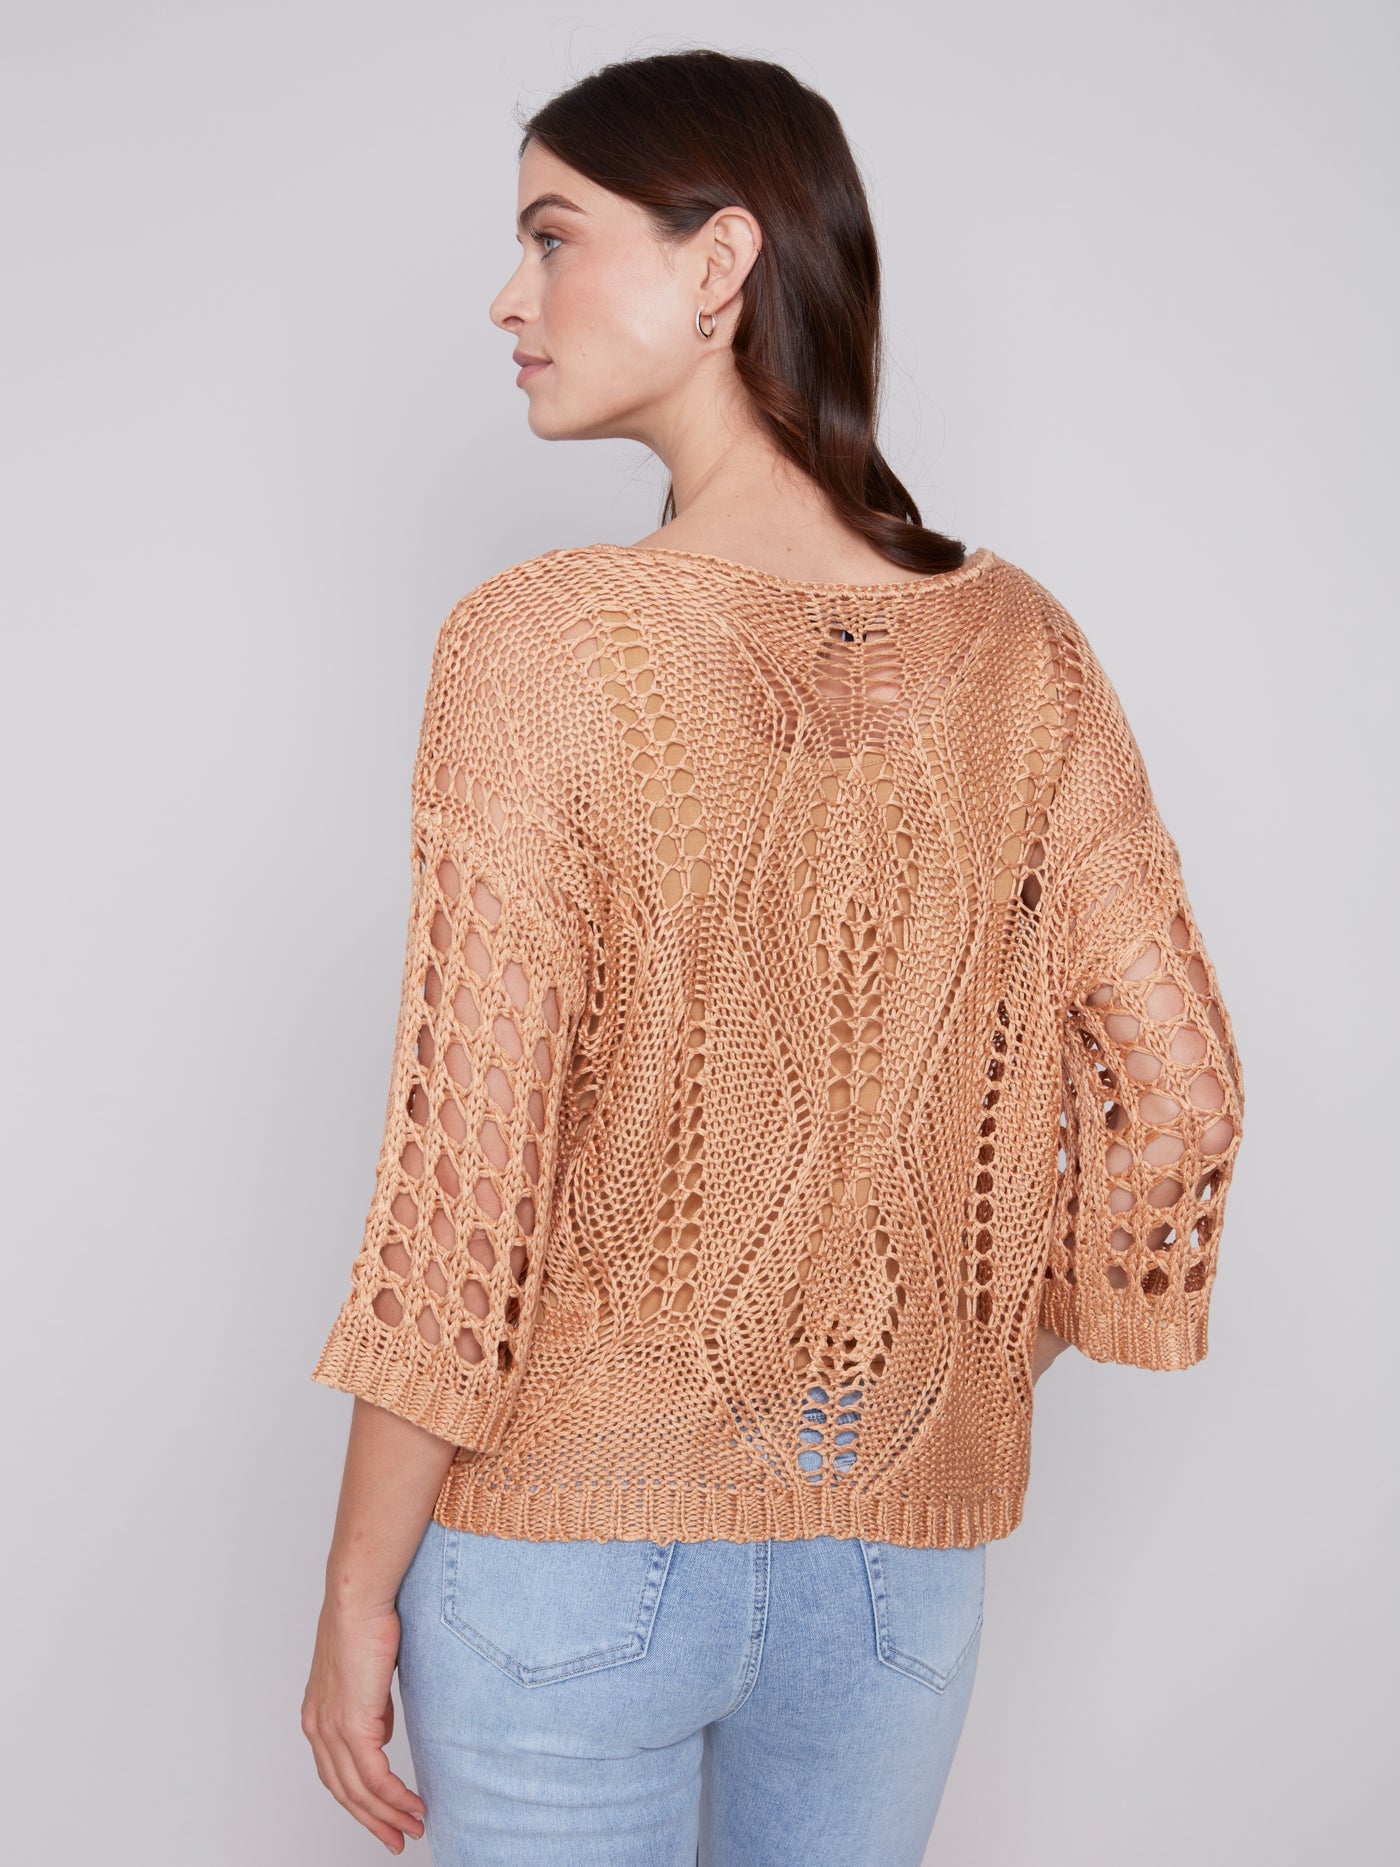 Corn Fancy Crochet Sweater